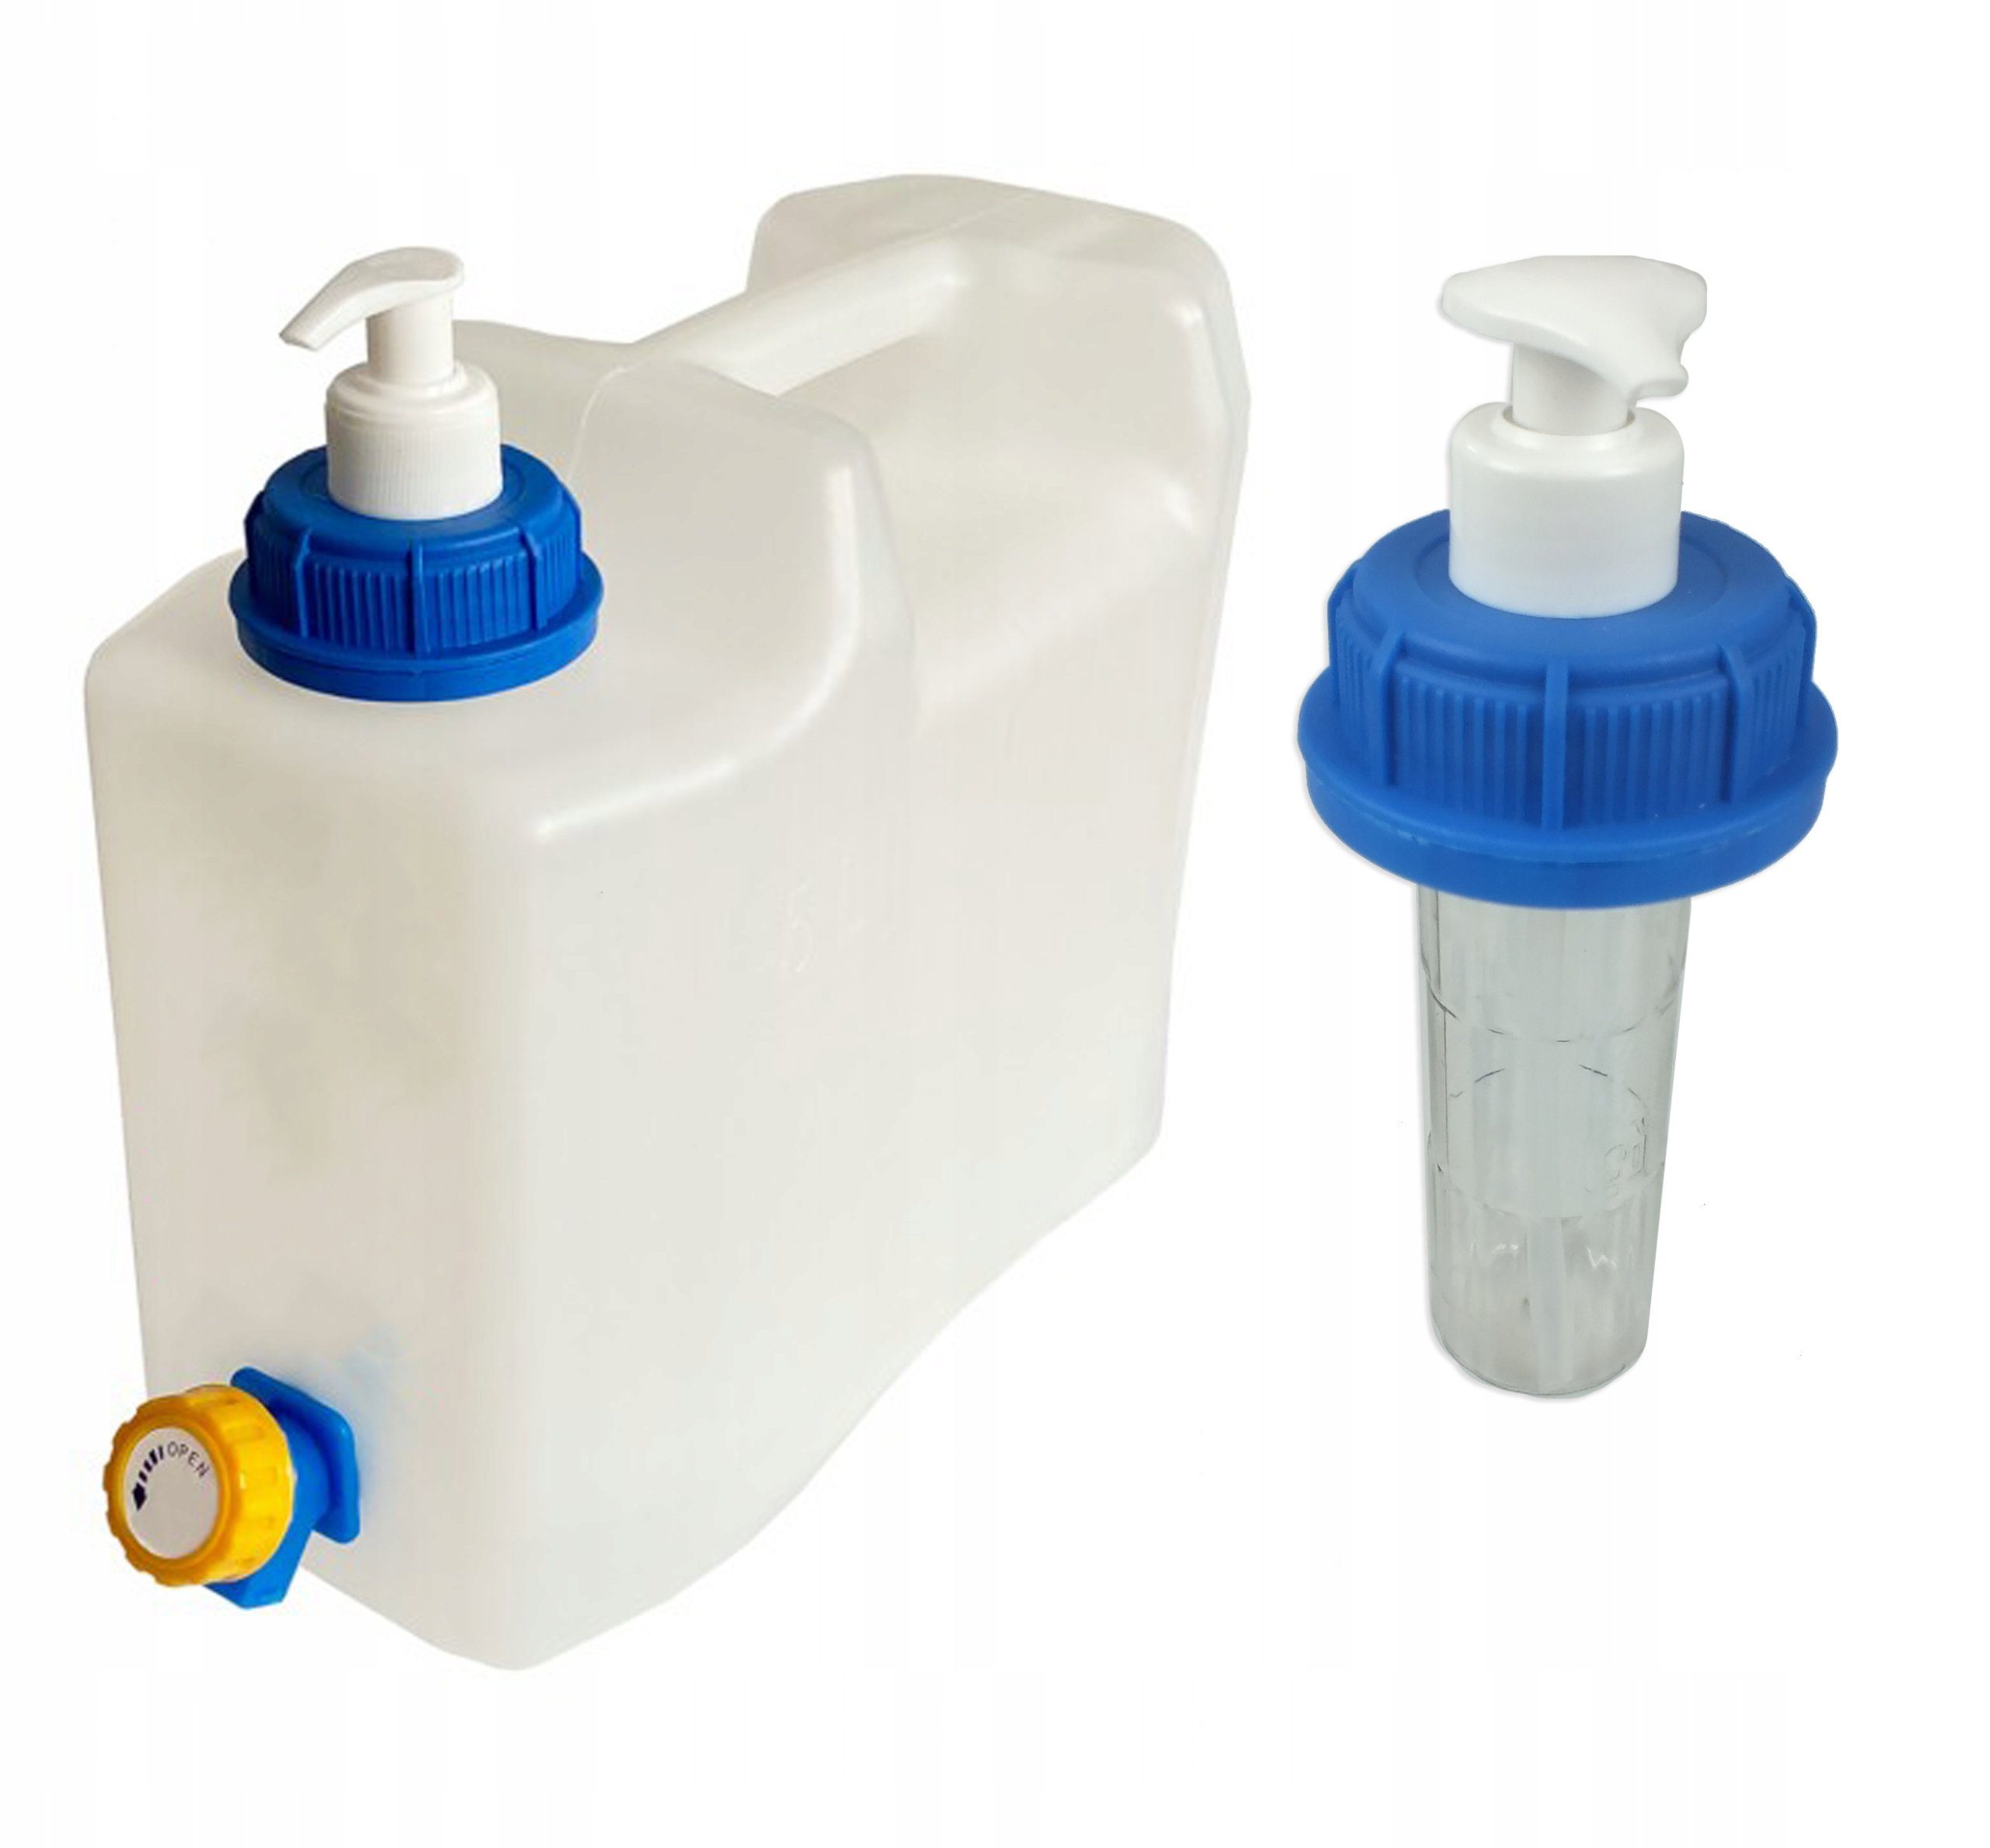 TRIZERATOP Kanister für Wasserkanister 150ml Seifenpumpe Seifenspender